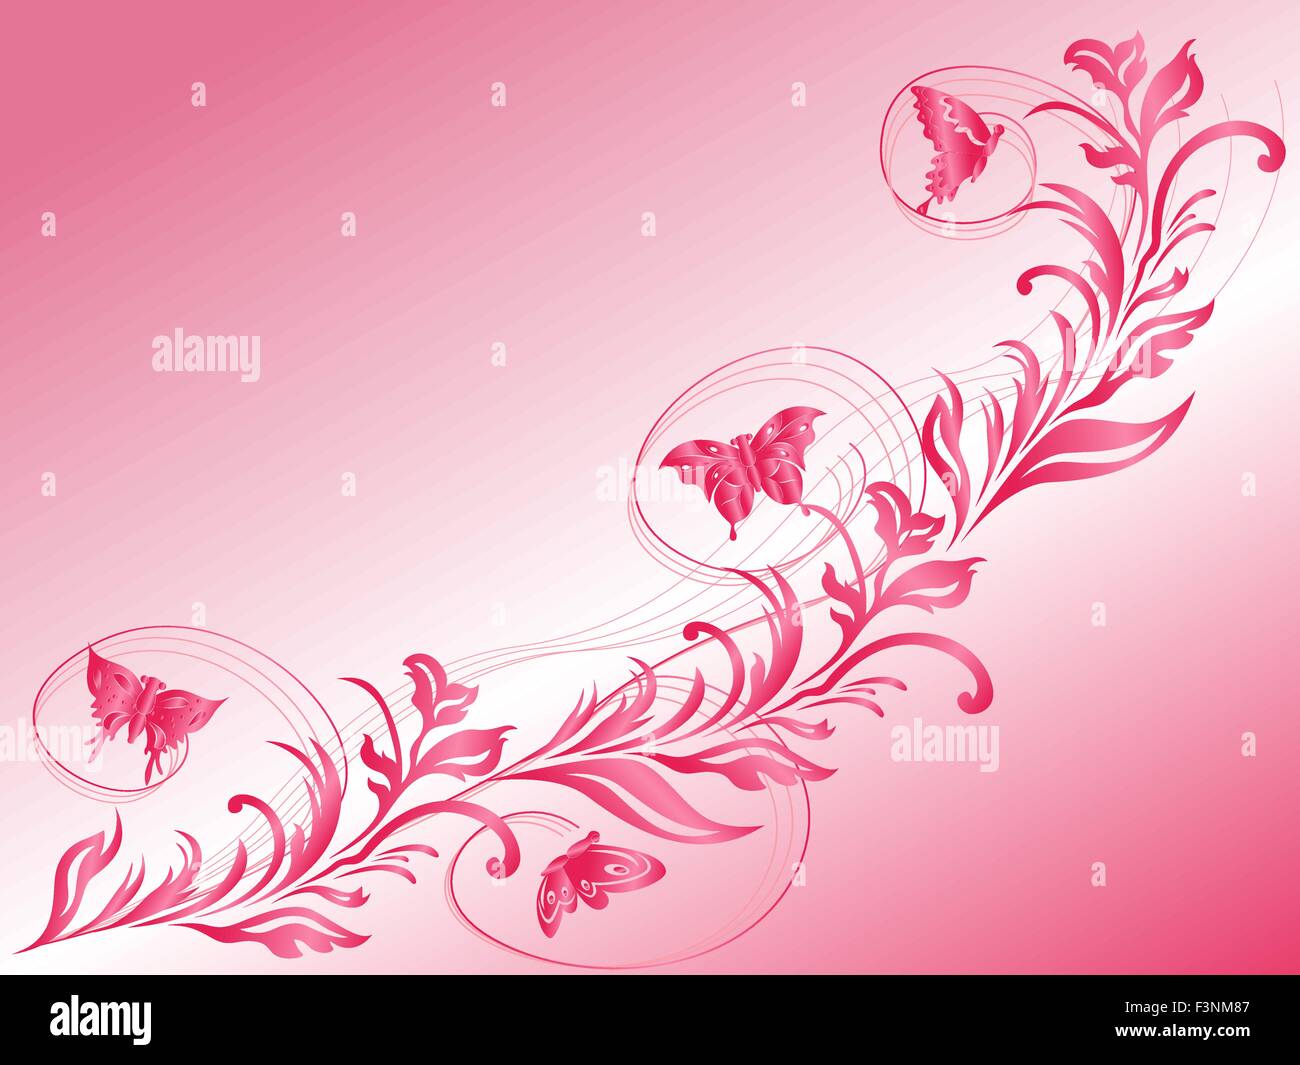 Las mariposas volar una hermosa ramita, dibujo a mano estilizada tarjeta de felicitación de vector en rosa matices Ilustración del Vector